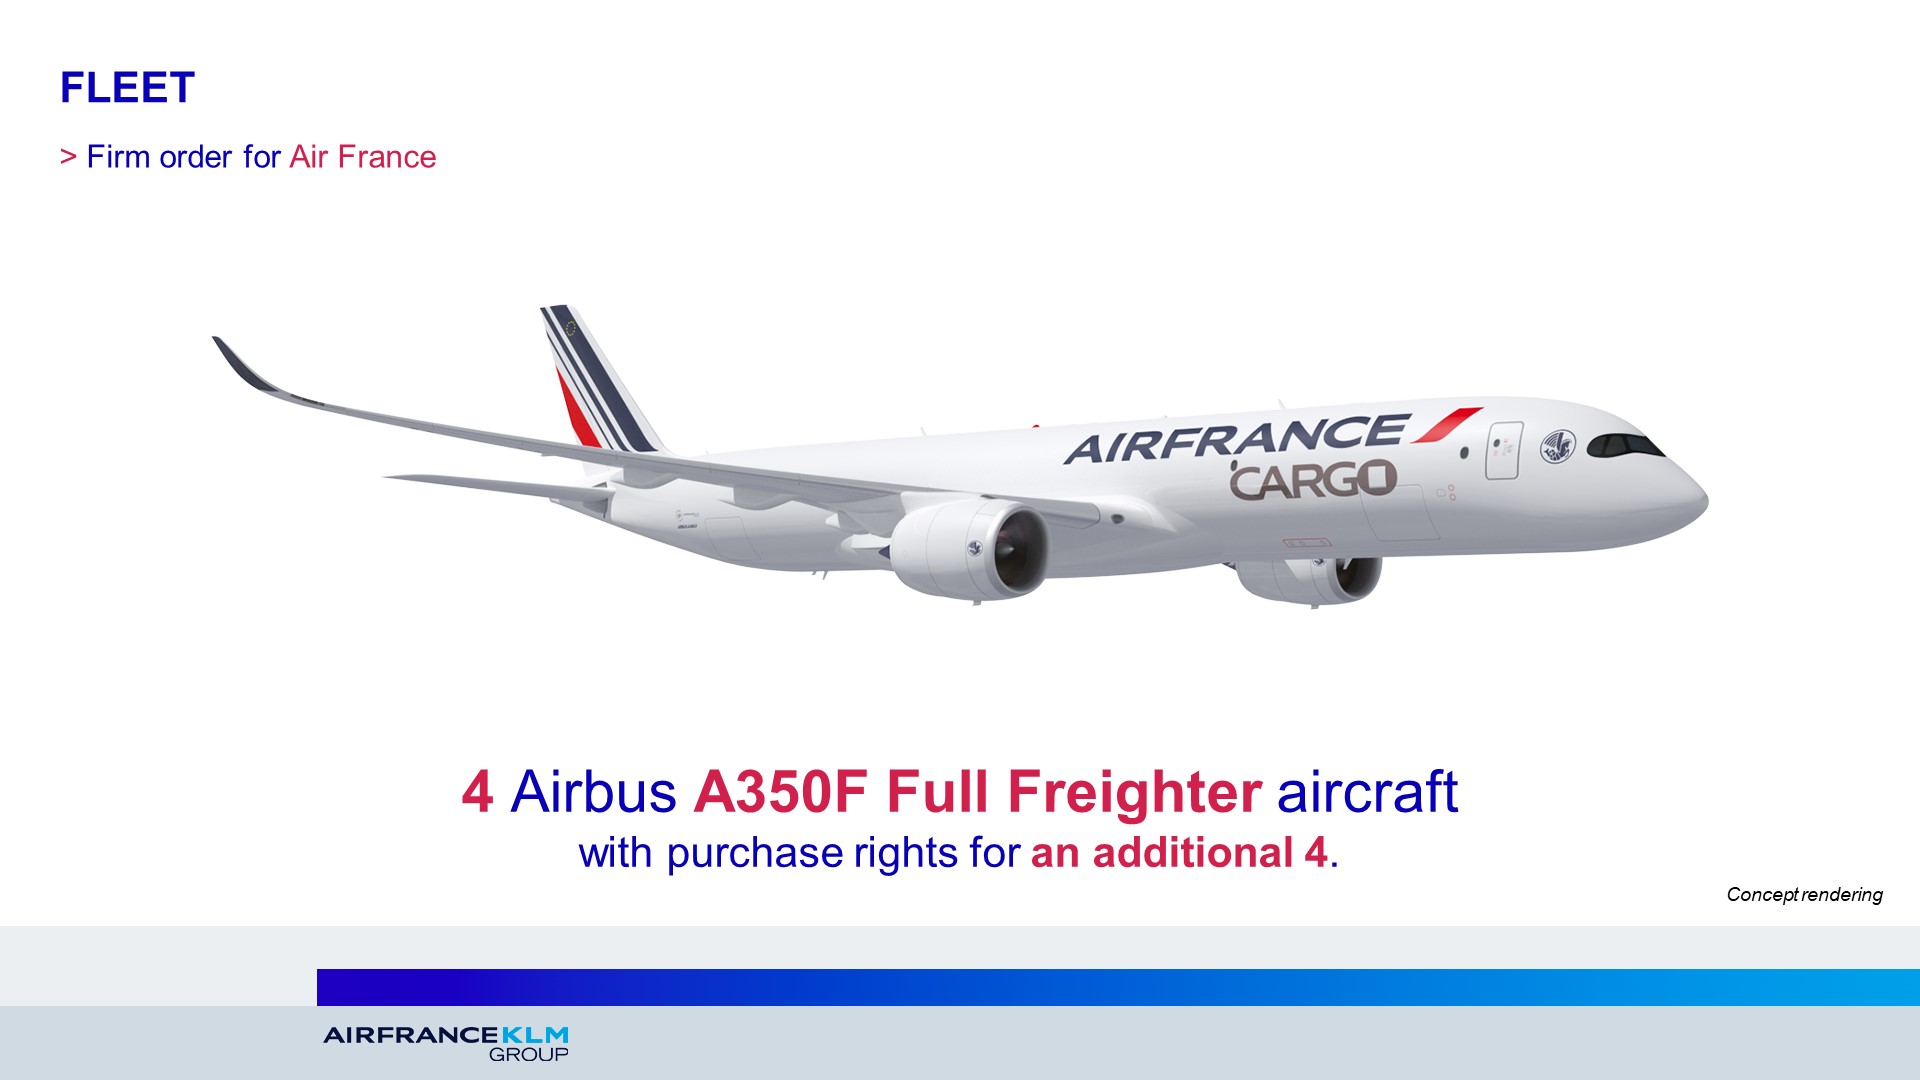 NOUVEAU NEUF A350-900 AIR FRANCE AIRBUS STICKER AUTOCOLLANT 